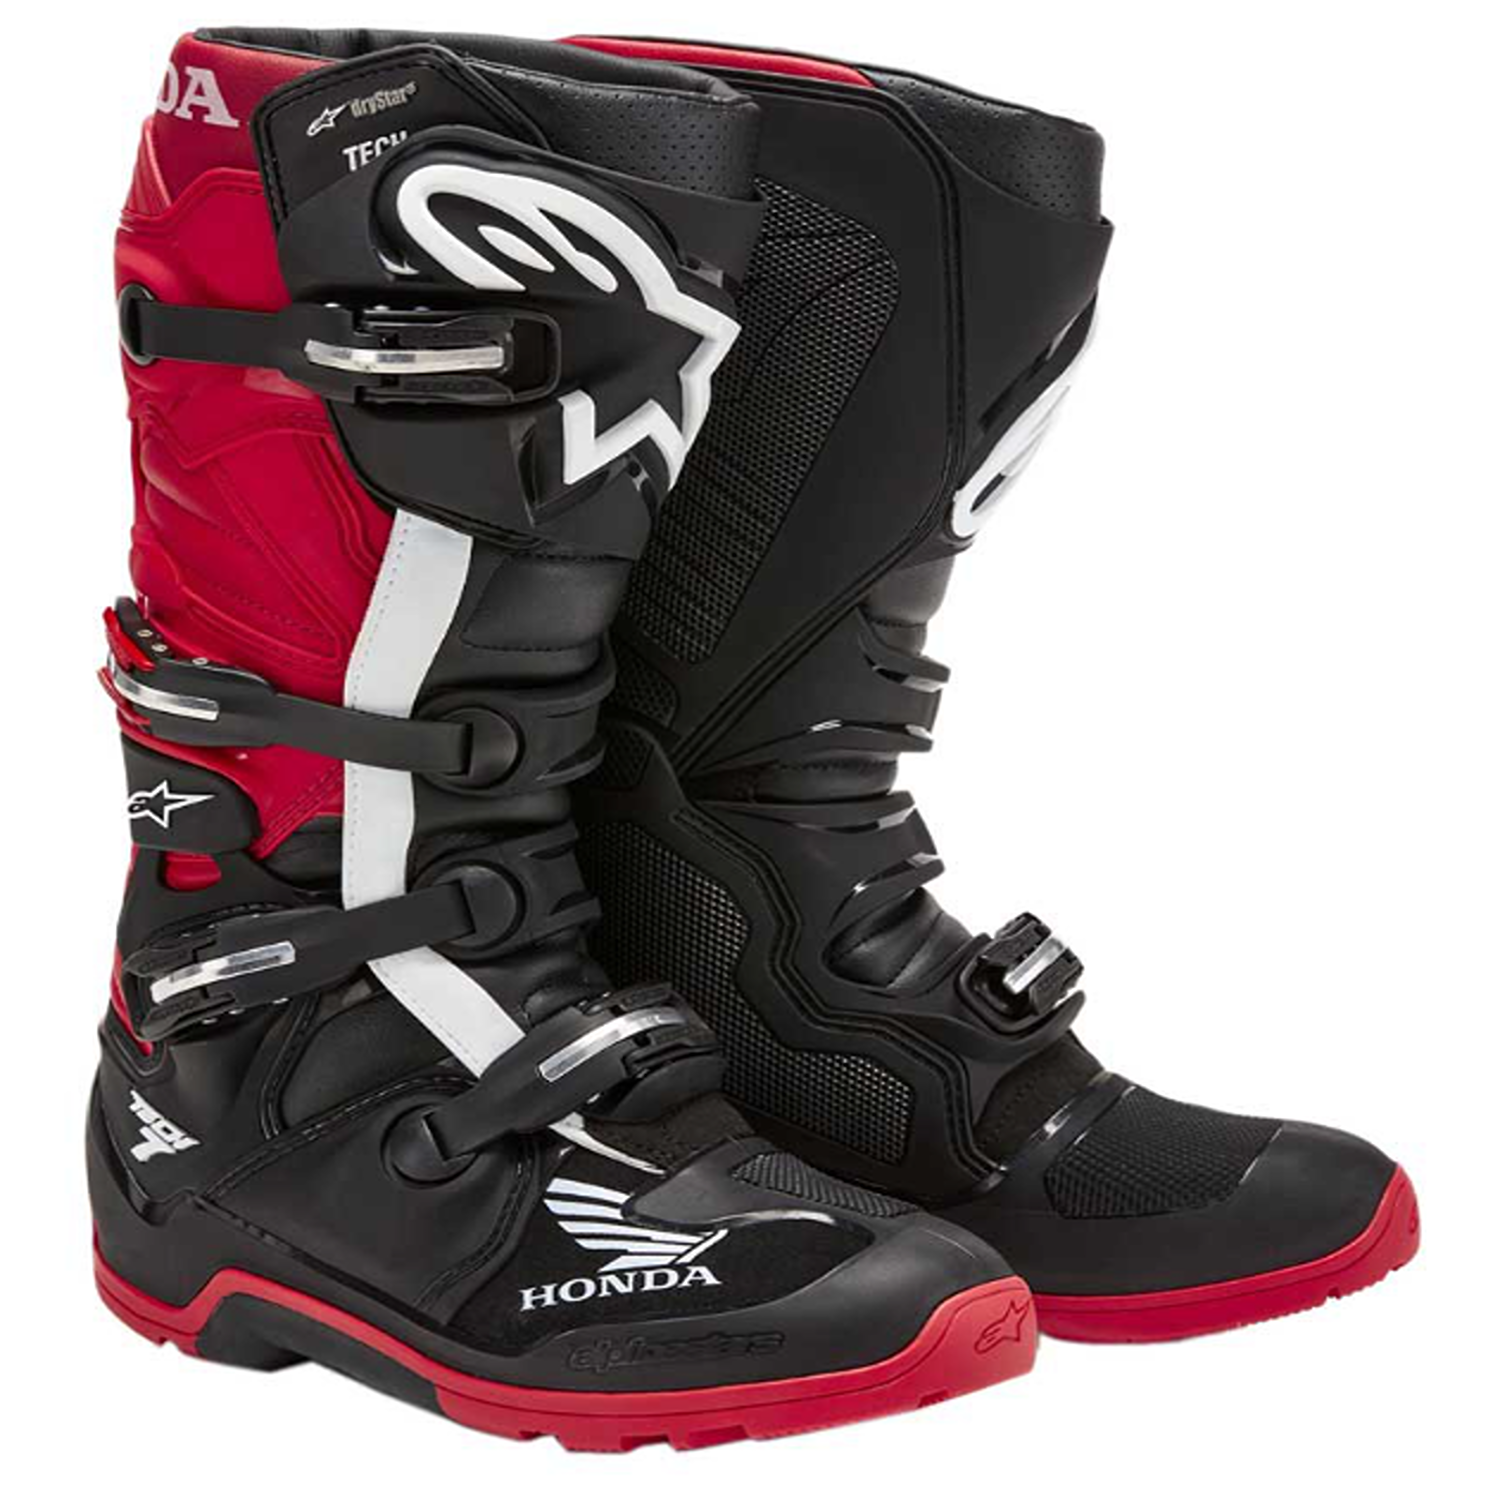 Image of Alpinestars Honda Tech 7 Enduro Drystar Boots Black Bright Red Größe US 12